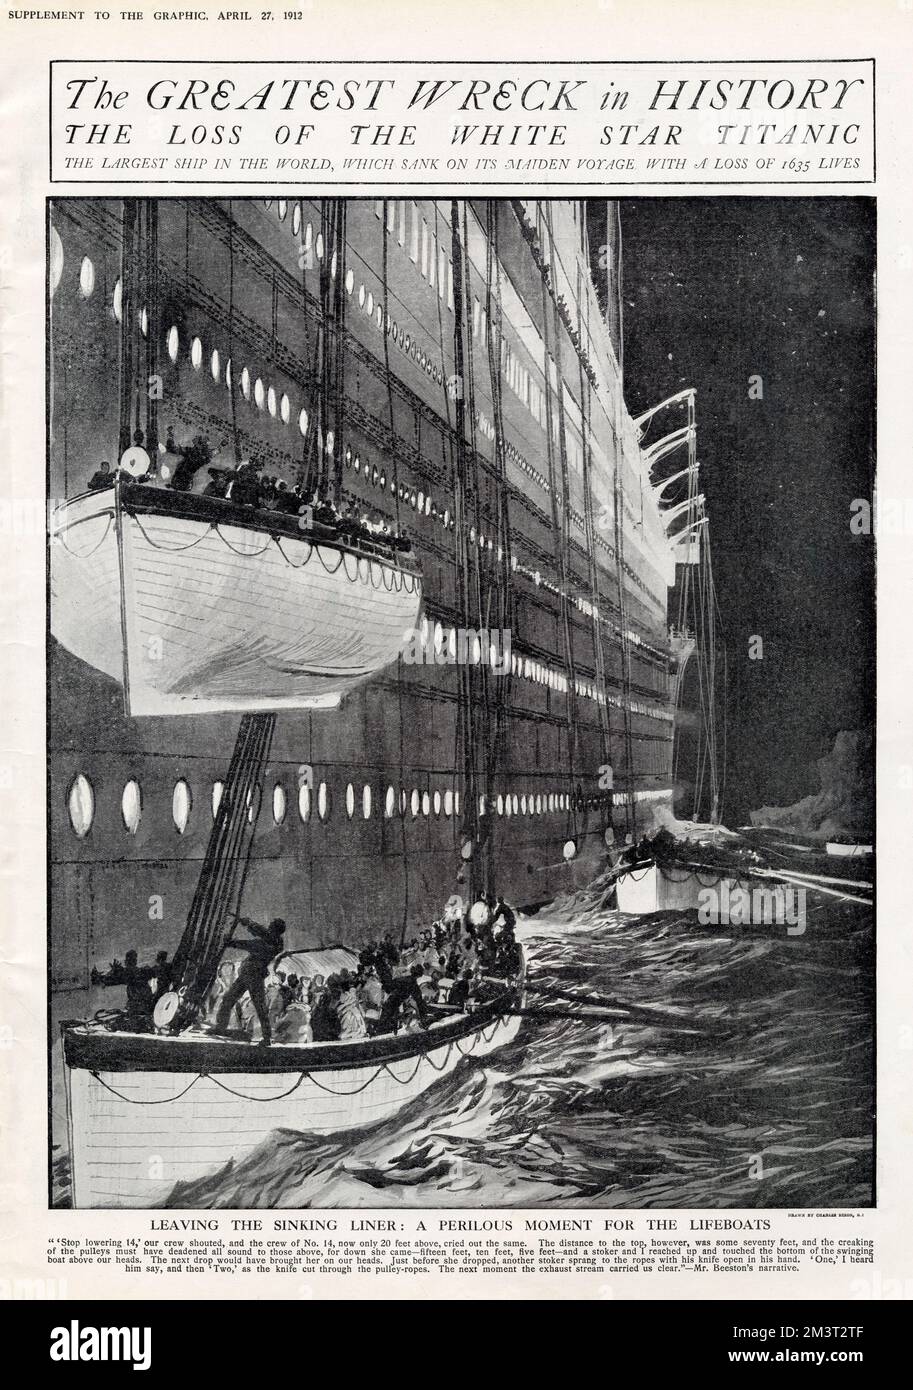 Das größte Wrack der Geschichte: Der Verlust der White Star Titanic. Verlassen des sinkenden Schiffes: Ein gefährlicher Moment für die Rettungsboote, da ein Boot fast direkt auf ein anderes abgesenkt wird. Die Seilrollen werden durchgeschnitten, damit das Boot im Meer frei schweben kann. Stockfoto